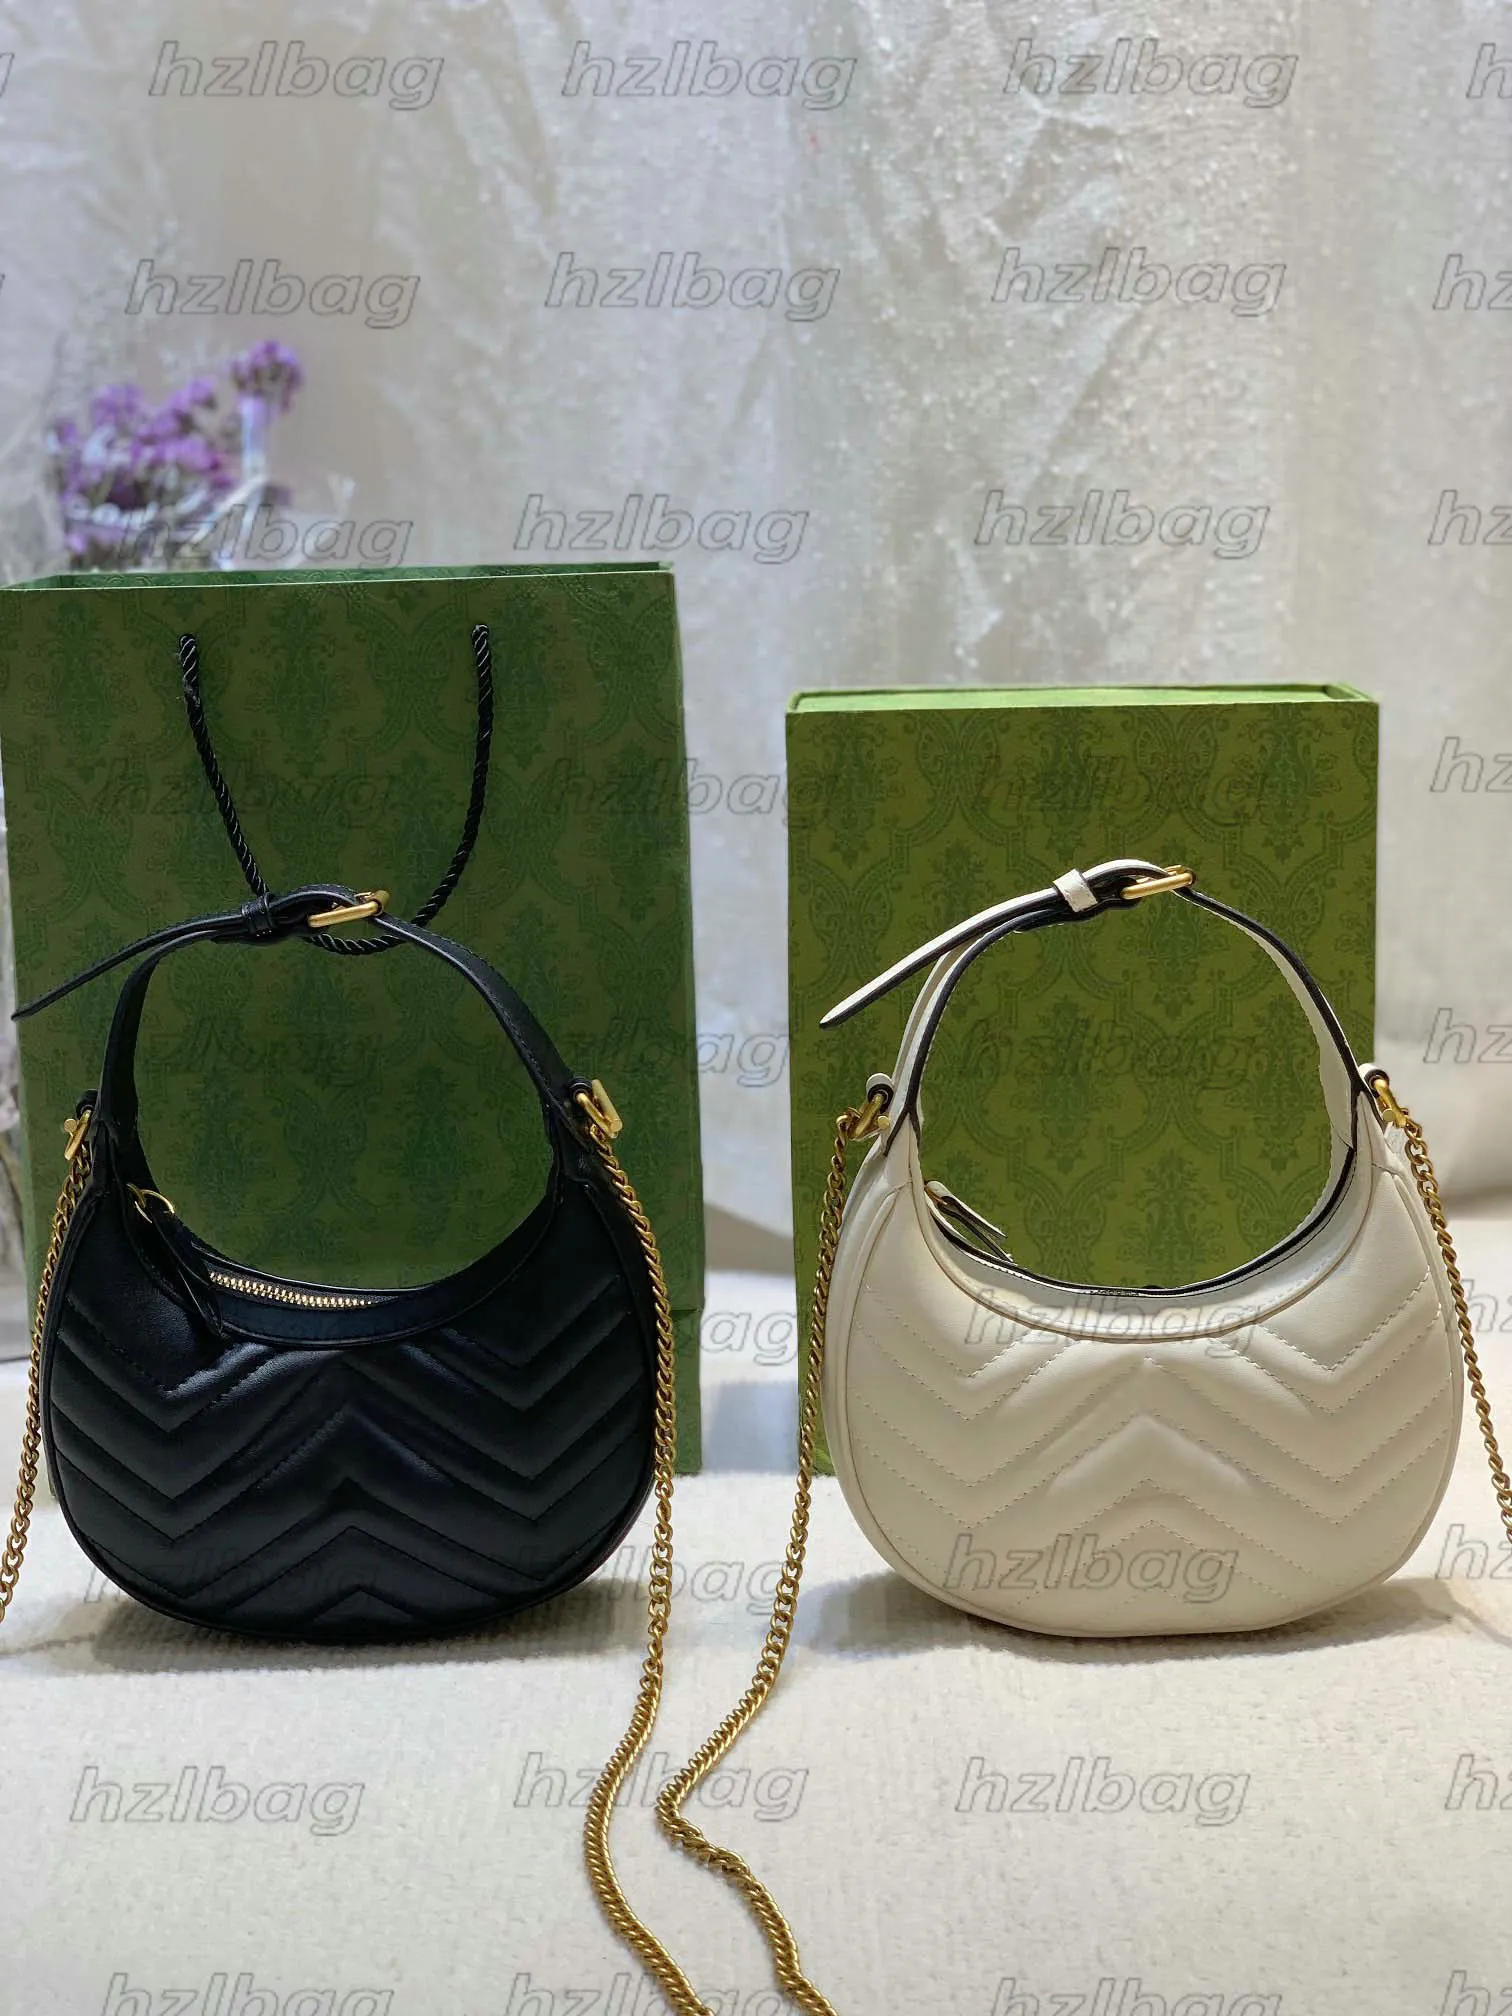 SELLA GRANDE – MORE Venezia | Made in Italy Handbag